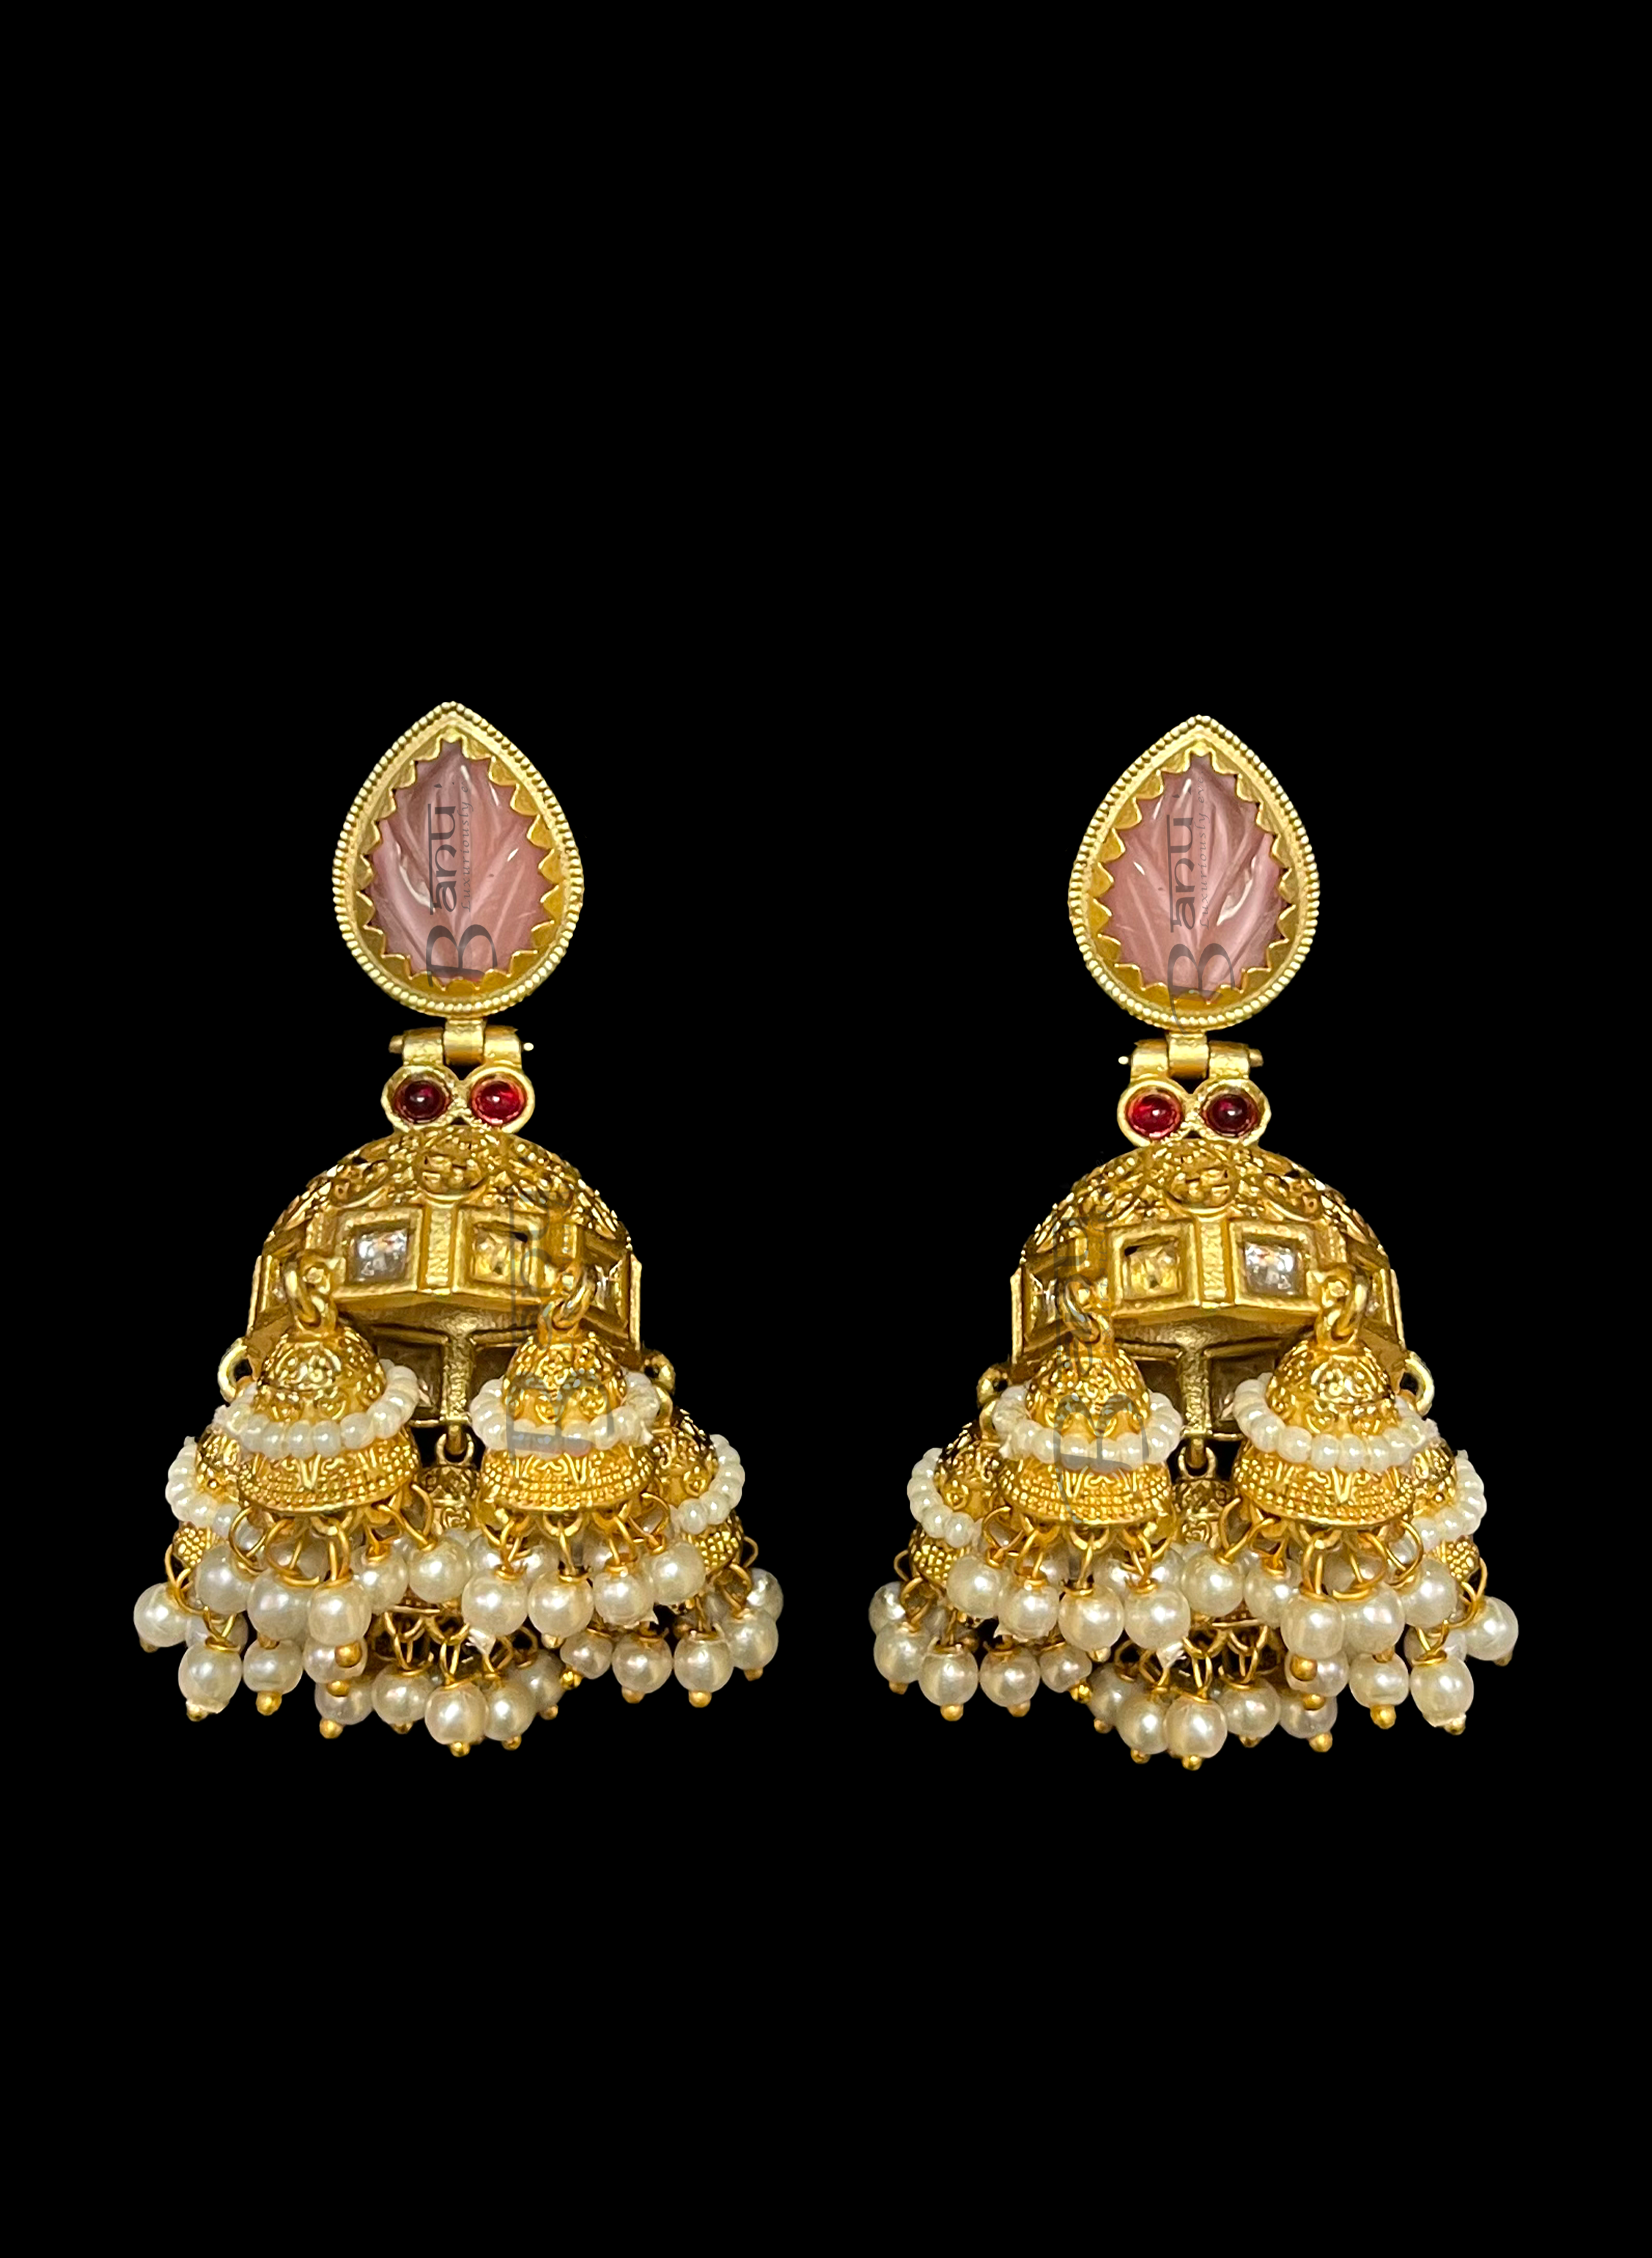 Rudra IV Earrings